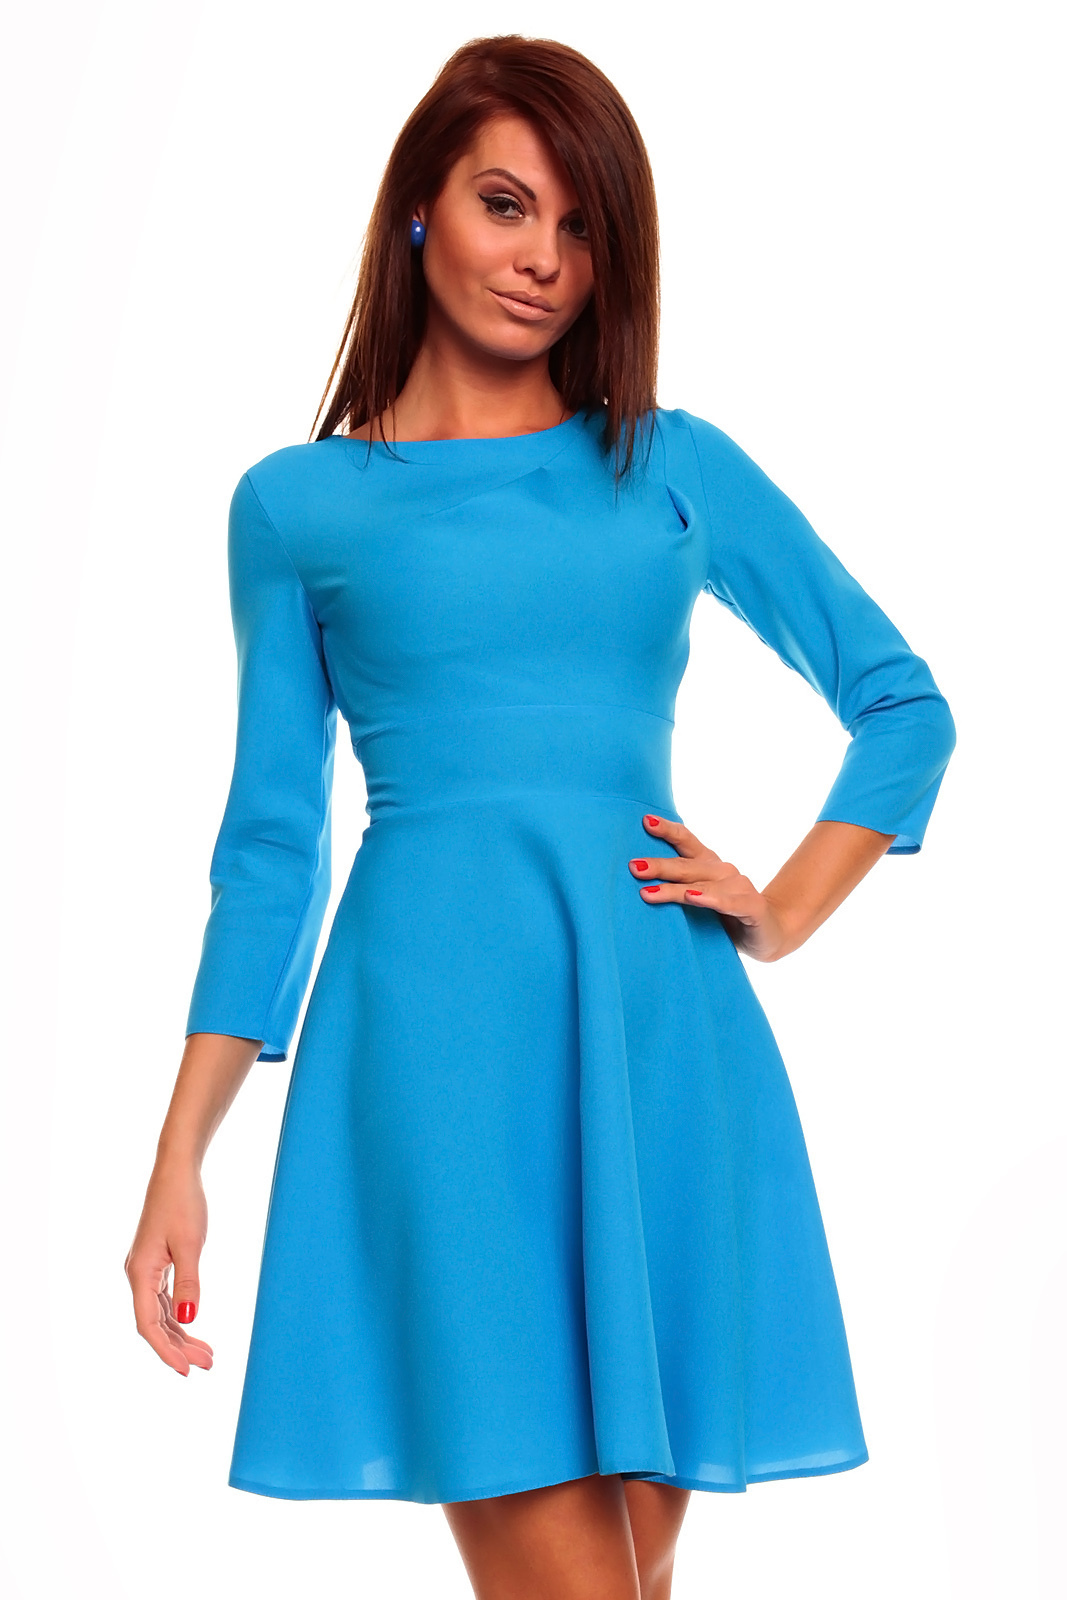 Купить платья оптом от производителя в Украине